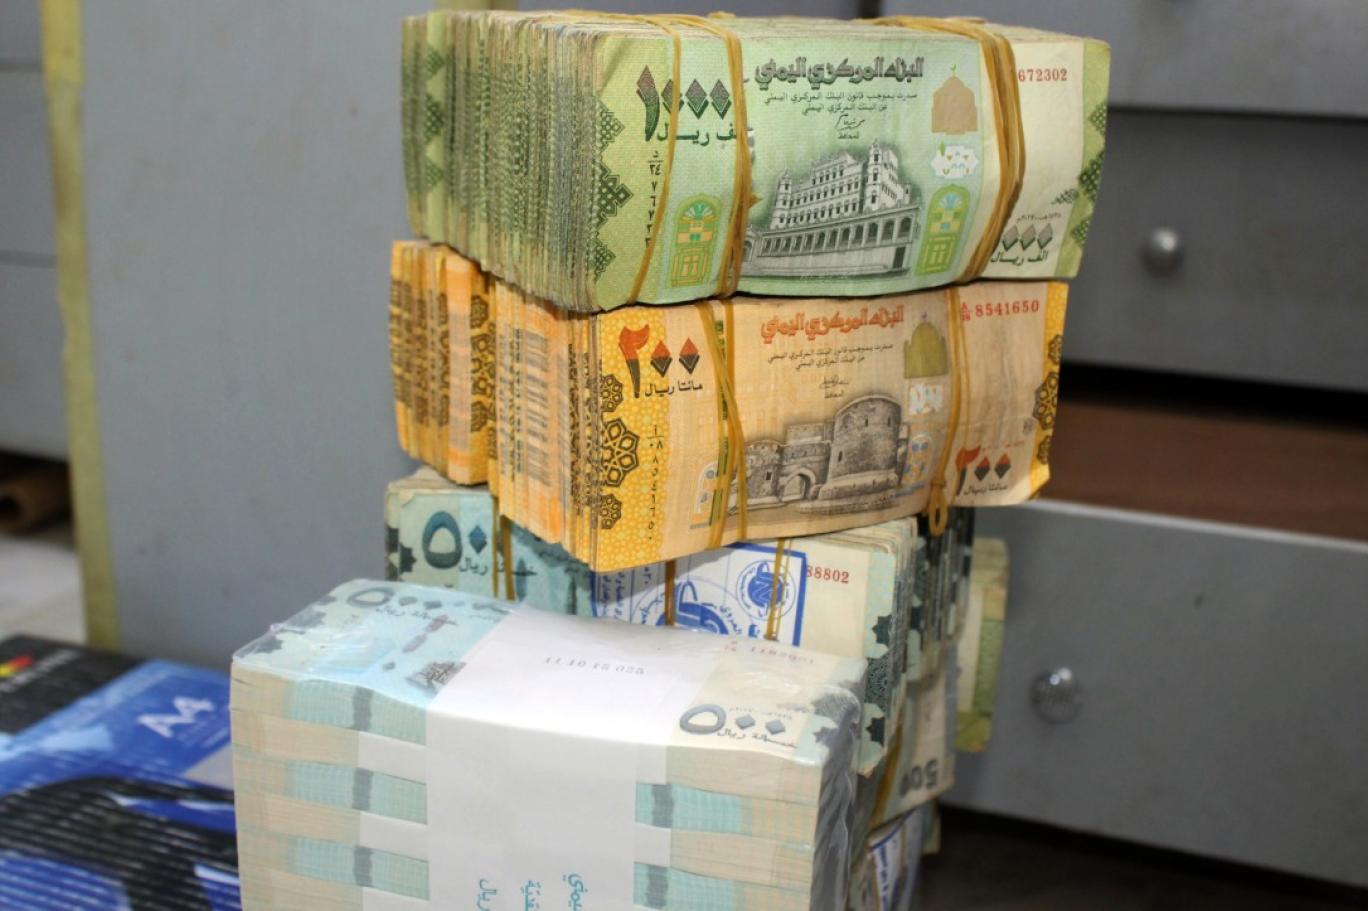 شاهد إستقرار نسبي للريال اليمني … وهذه هي أسعار الصرف في صنعاء وعدن ليومنا هذا الجمعة! 